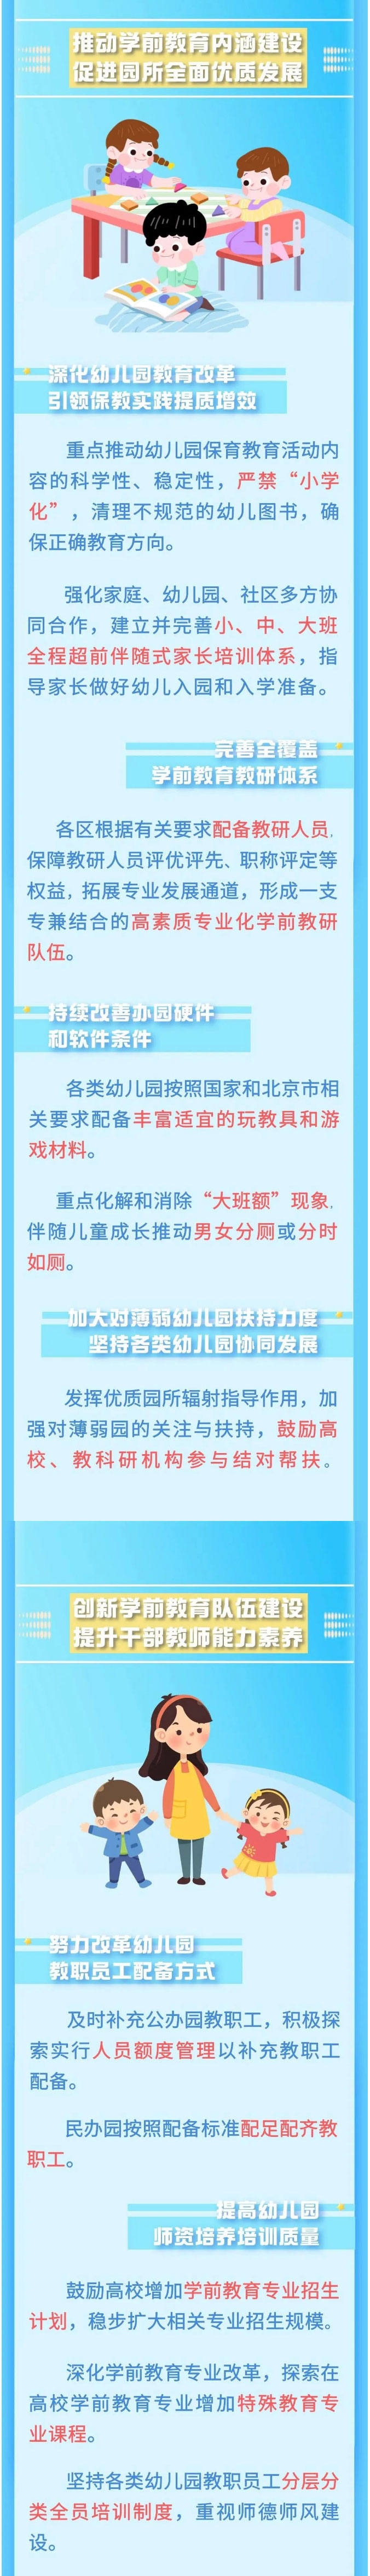 北京：到2025年，普惠性幼儿园覆盖率达到90%！